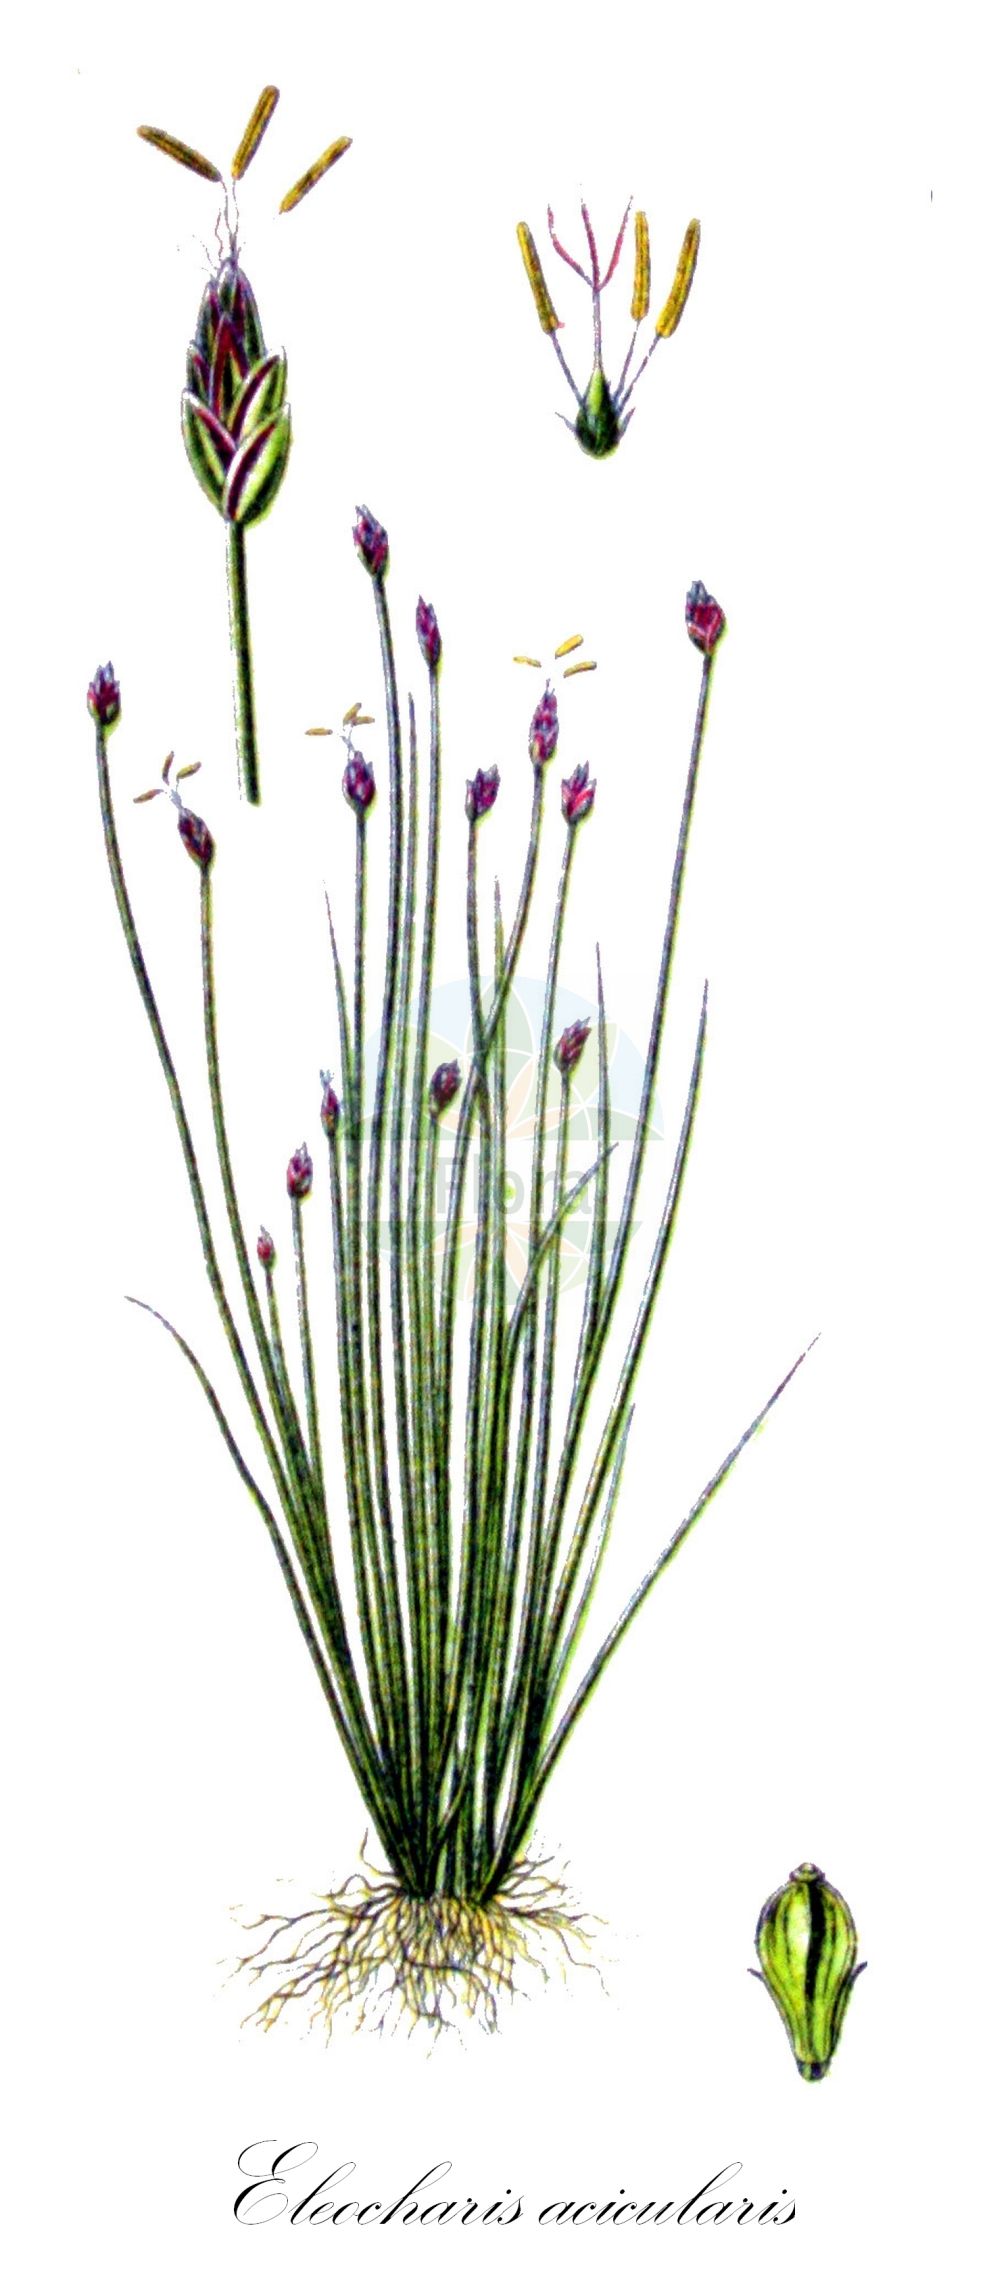 Historische Abbildung von Eleocharis acicularis (Nadel-Sumpfbinse - Needle Spike-rush). Das Bild zeigt Blatt, Bluete, Frucht und Same. ---- Historical Drawing of Eleocharis acicularis (Nadel-Sumpfbinse - Needle Spike-rush). The image is showing leaf, flower, fruit and seed.(Eleocharis acicularis,Nadel-Sumpfbinse,Needle Spike-rush,Eleocharis acicularis,Scirpus acicularis,Nadel-Sumpfbinse,Nadelbinse,Needle Spike-rush,Slender Spikerush,Eleocharis,Sumpfbinse,Spikerush,Cyperaceae,Sauergräser,Sedge family,Blatt,Bluete,Frucht,Same,leaf,flower,fruit,seed,Sturm (1796f))